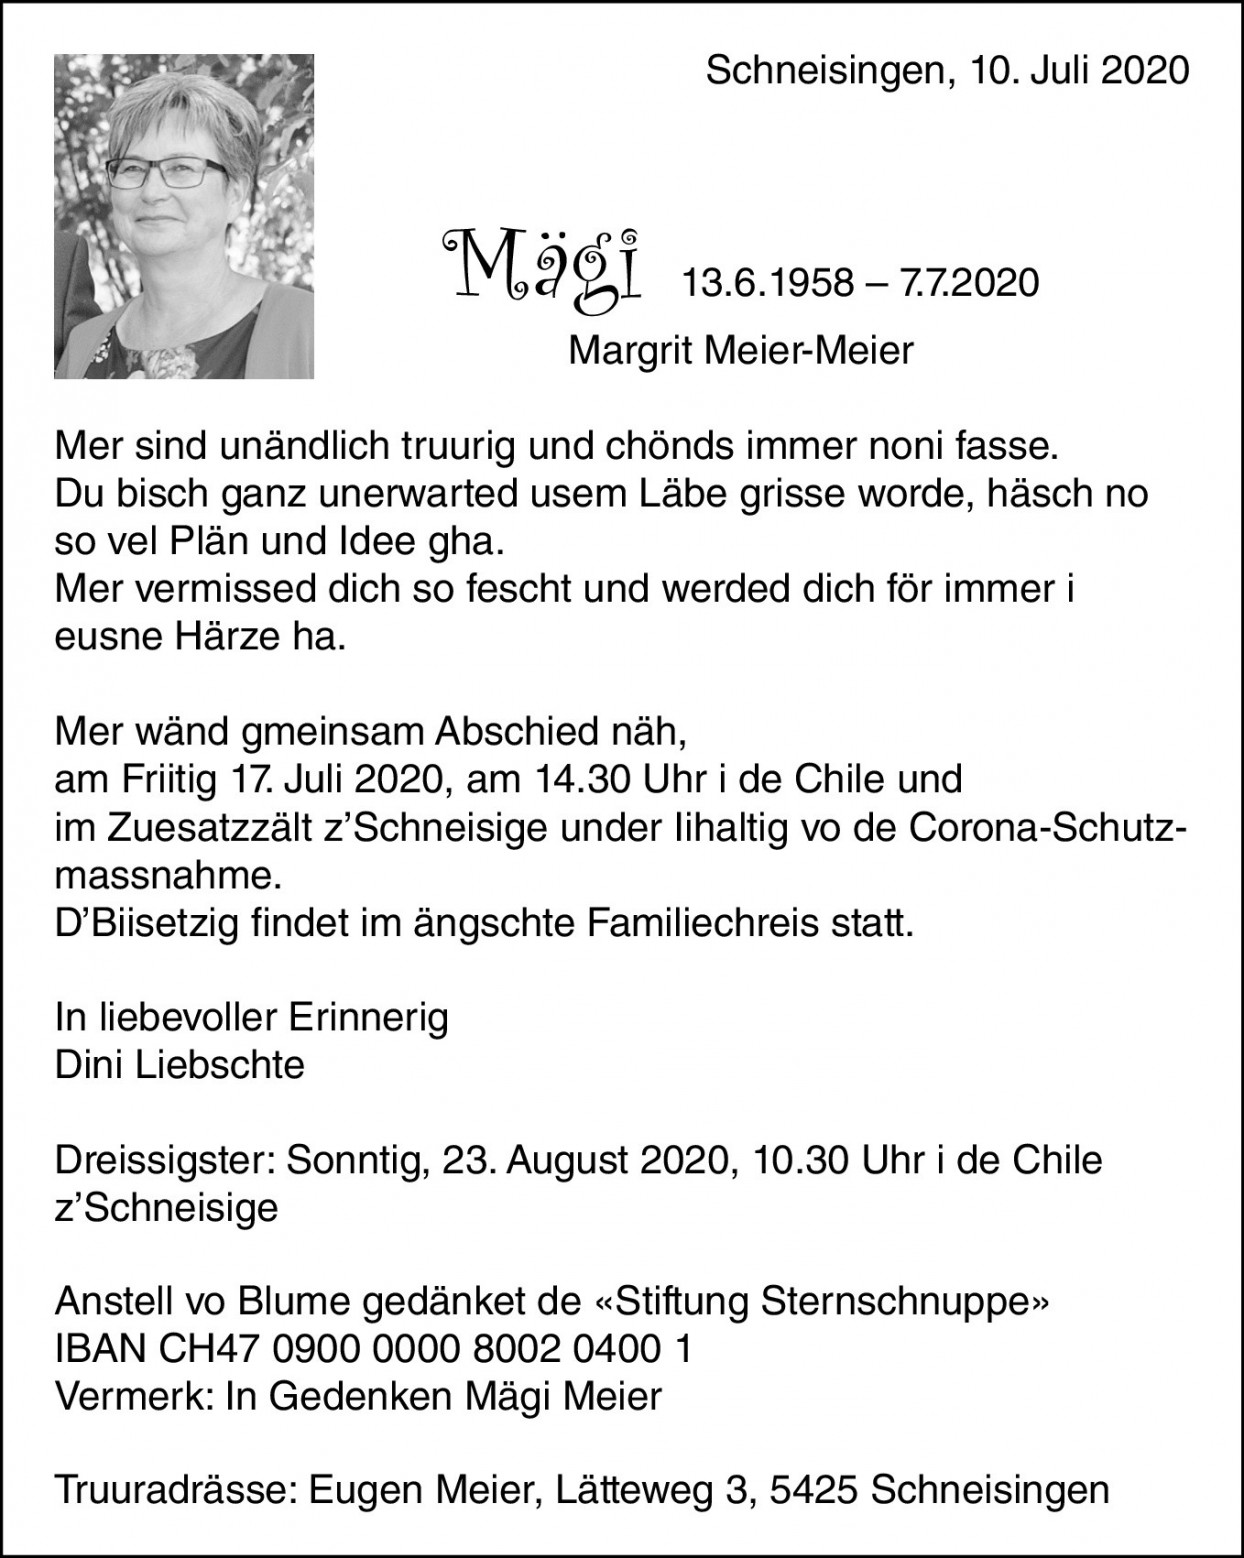 Margrit Meier-Meier